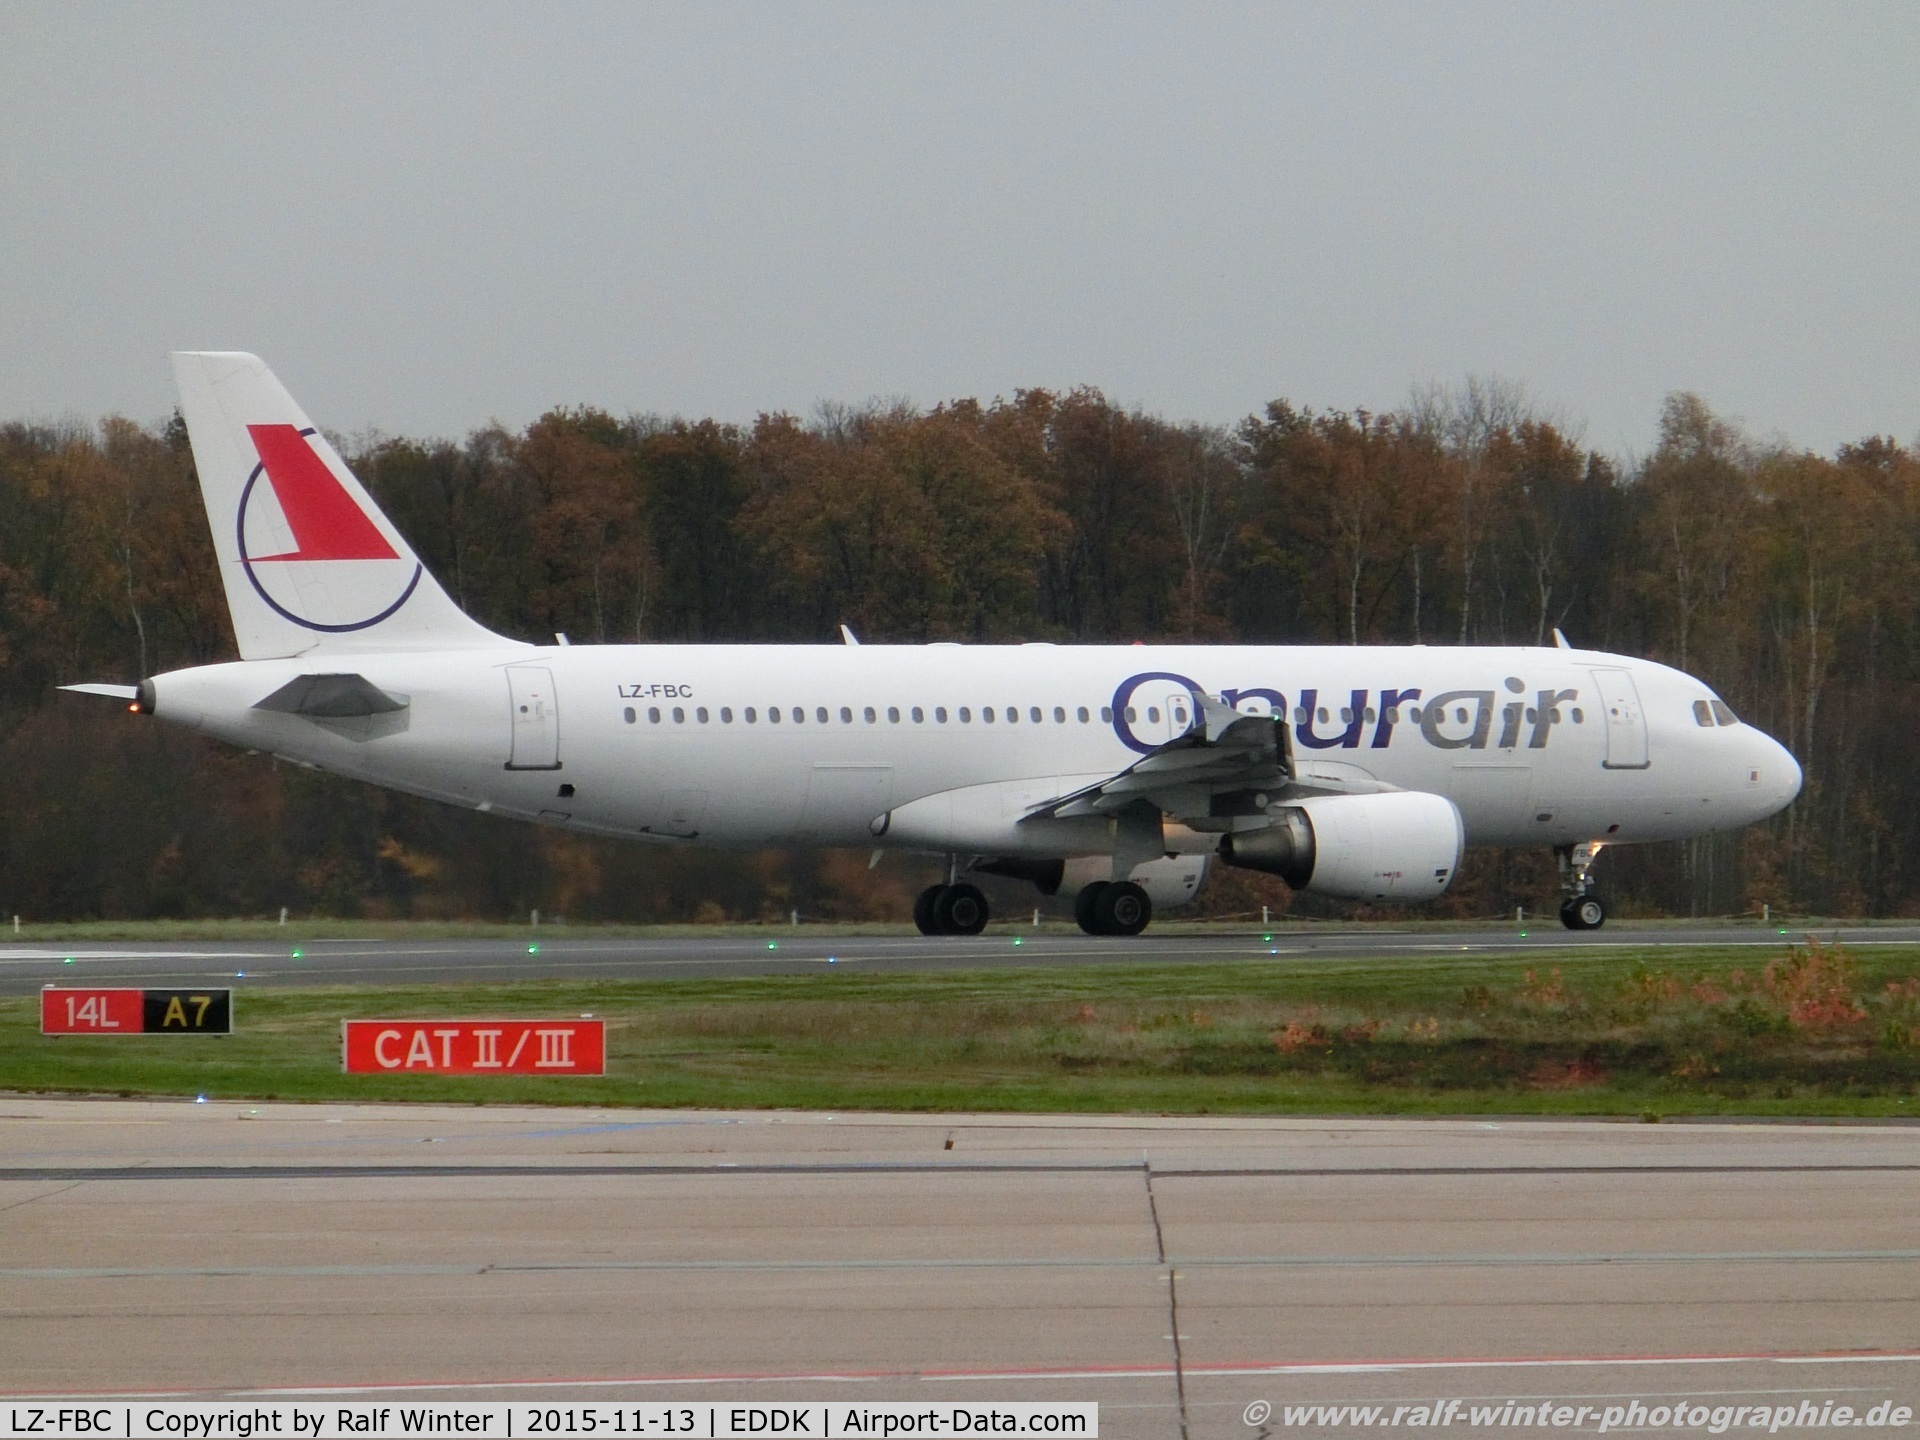 LZ-FBC, 2005 Airbus A320-214 C/N 2540, Airbus A320-214 - Onur Air - 2540 - LZ-FBC - 13.11.2015 - CGN